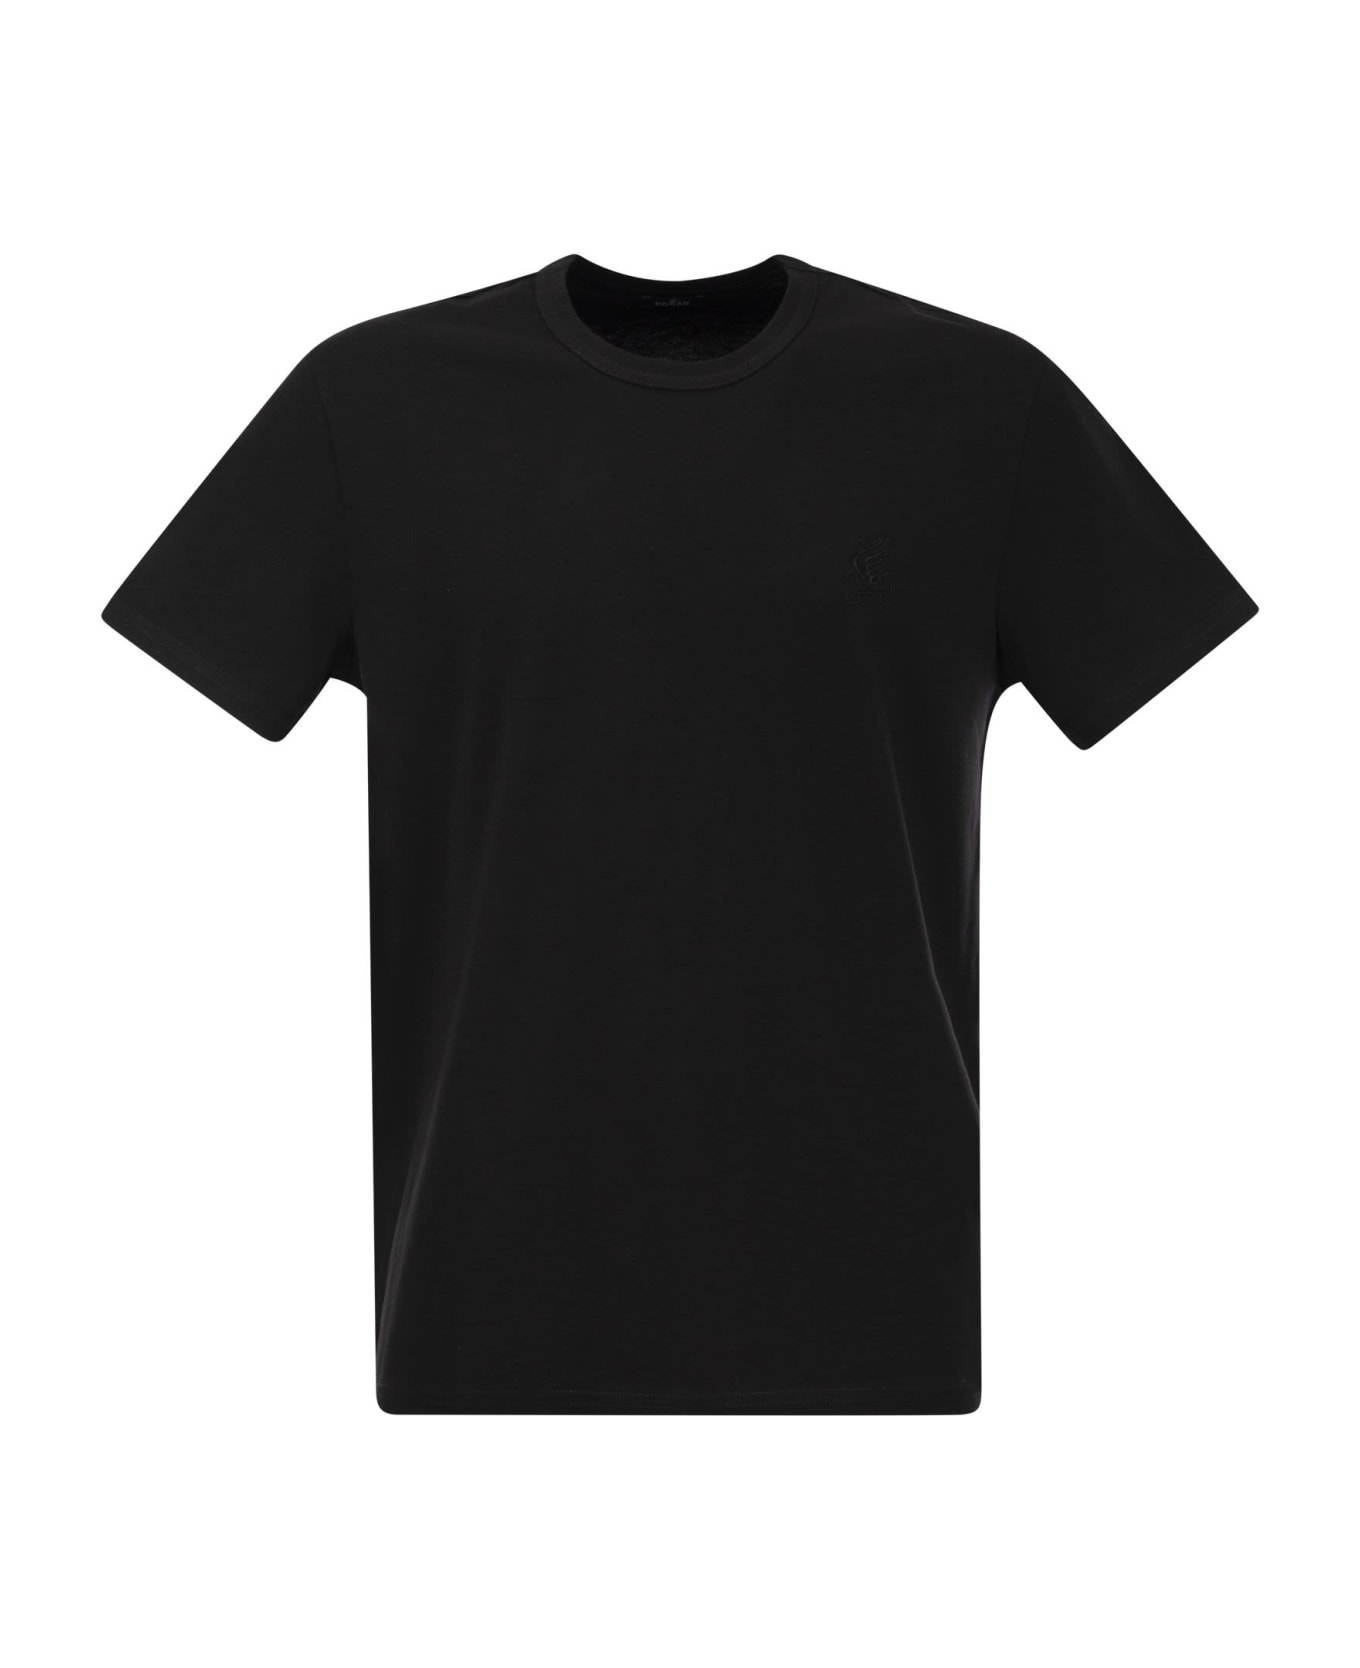 Hogan Cotton Jersey T-shirt - Black